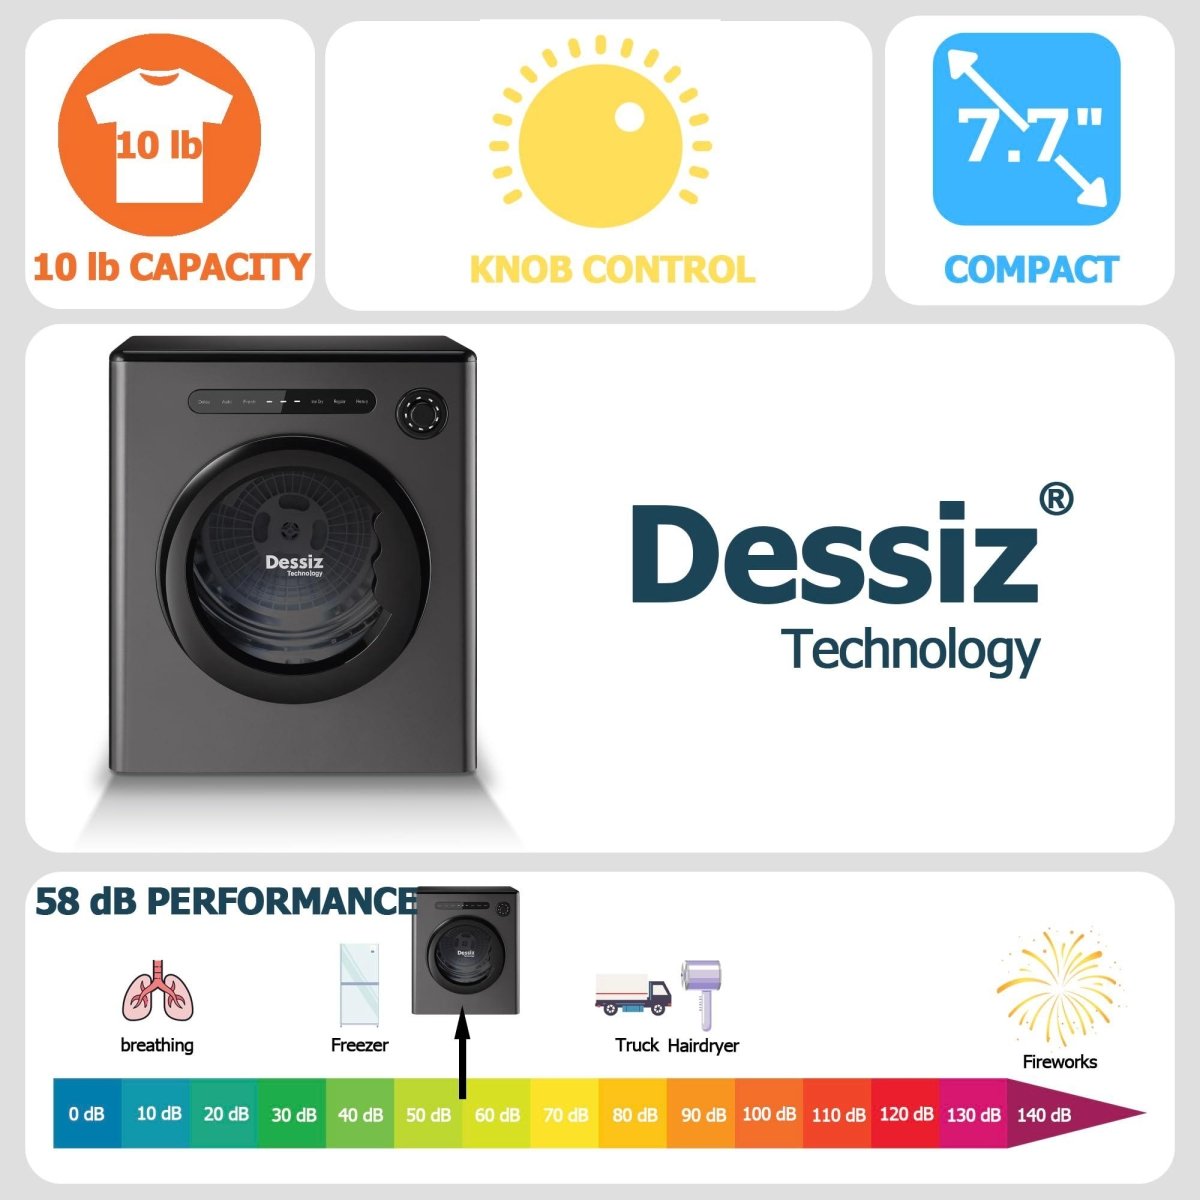 Dessiz 11lb Portable clothes dryer, compact size 1.6cu.ft, Smart Digital Control -Grey - Dessiz